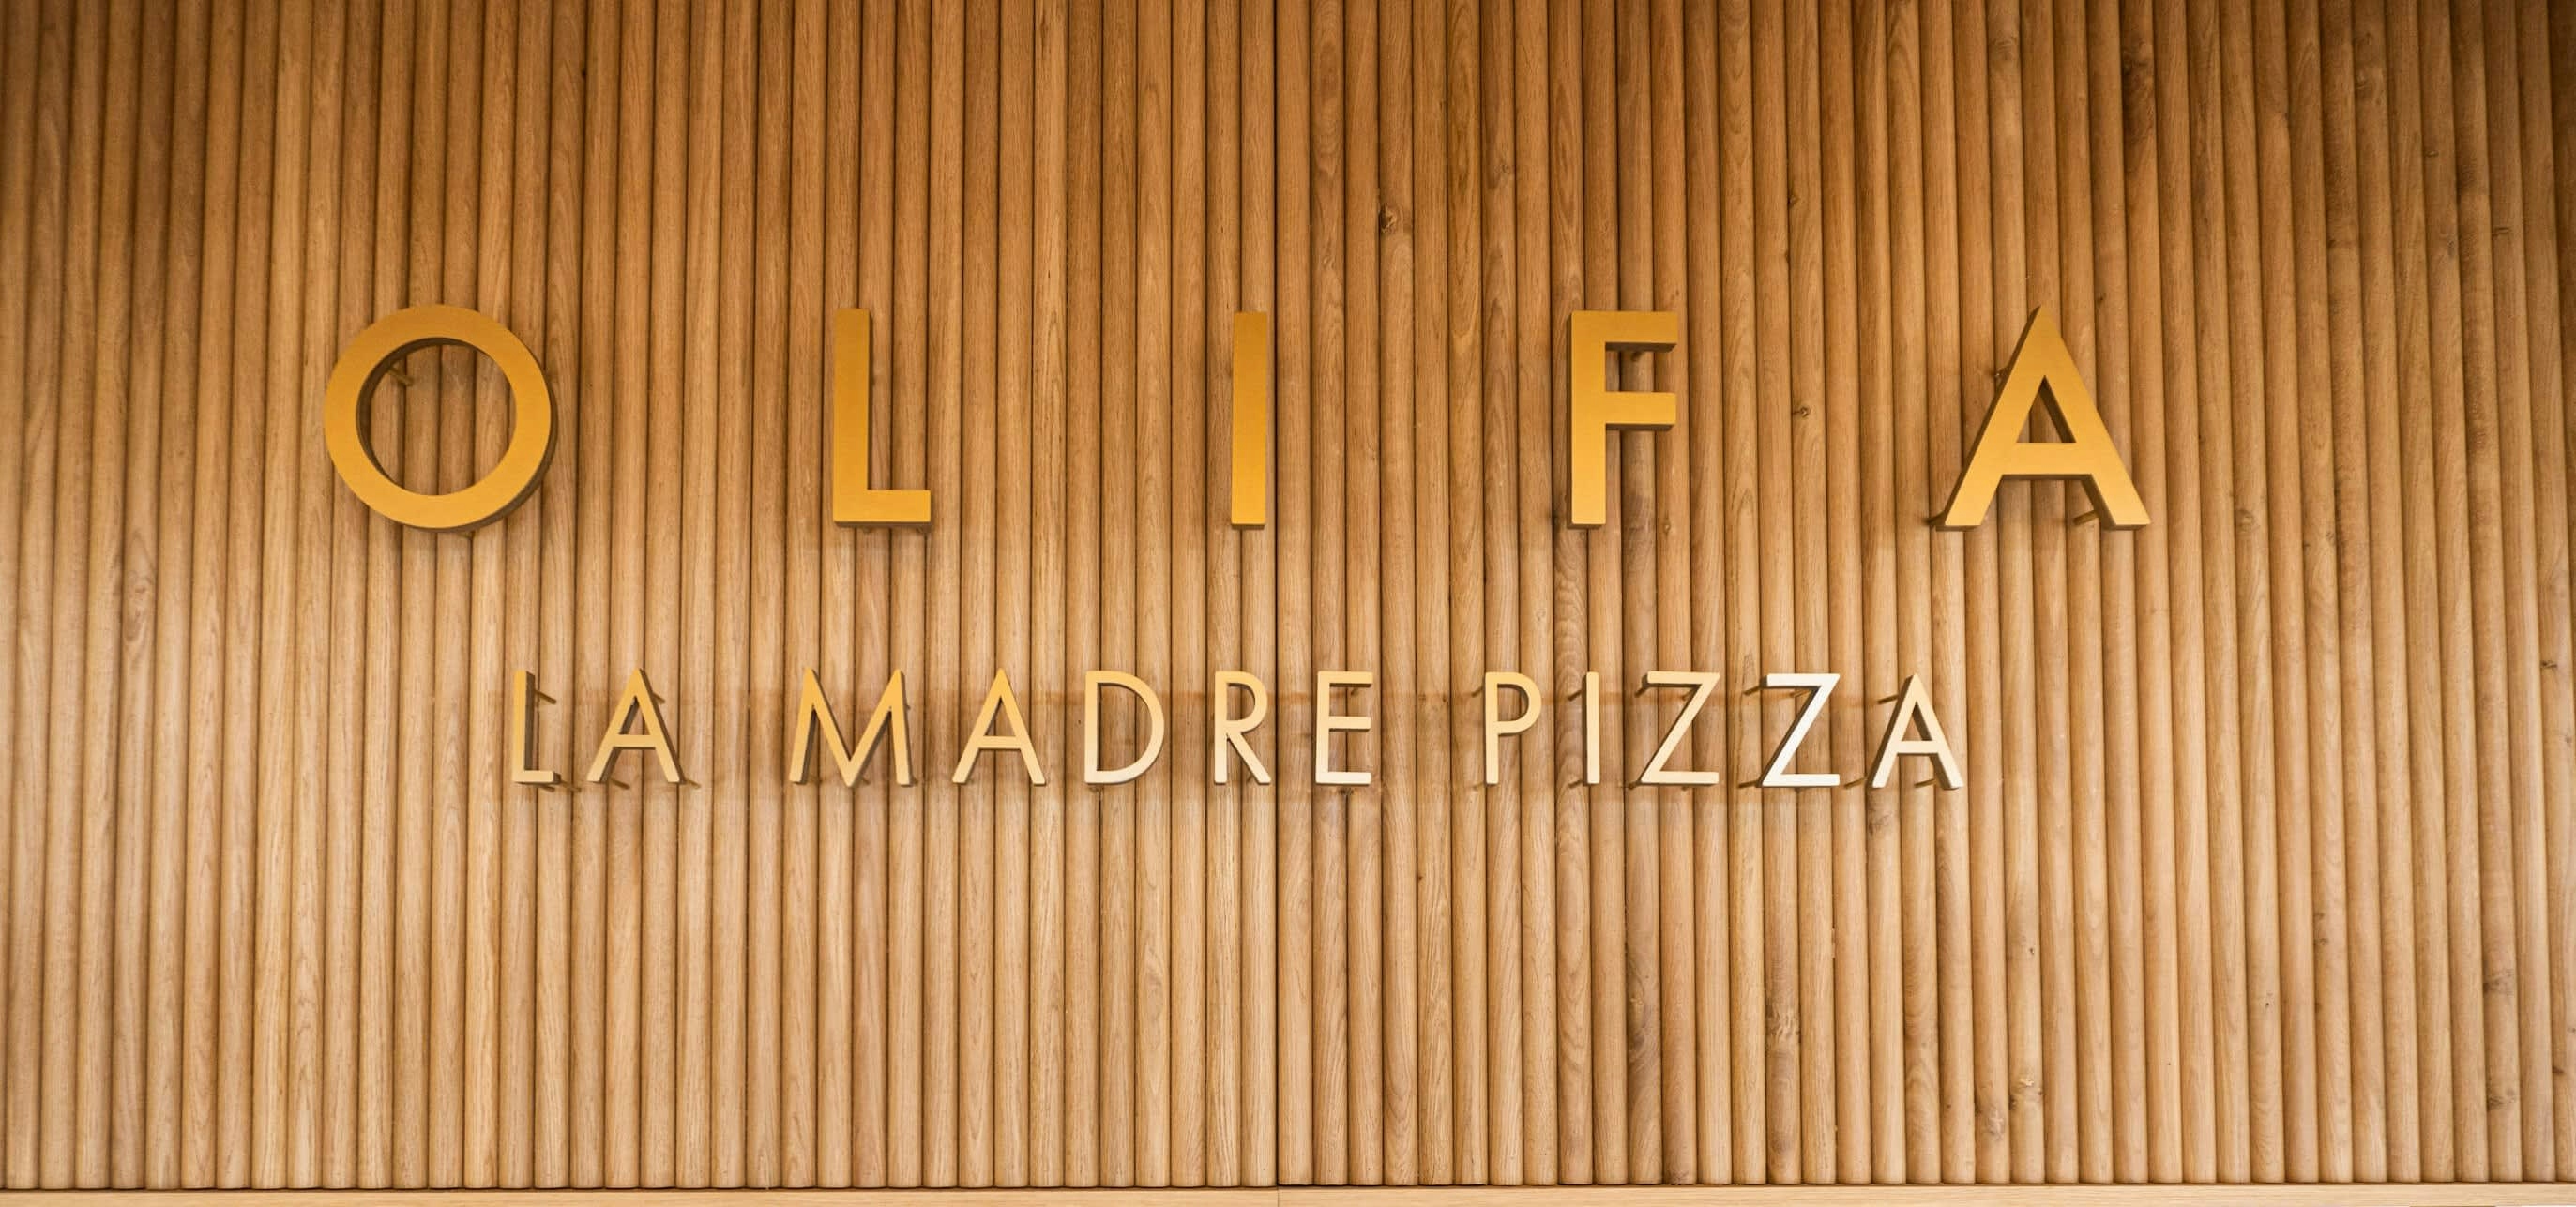 Olifa - La Madre Pizza